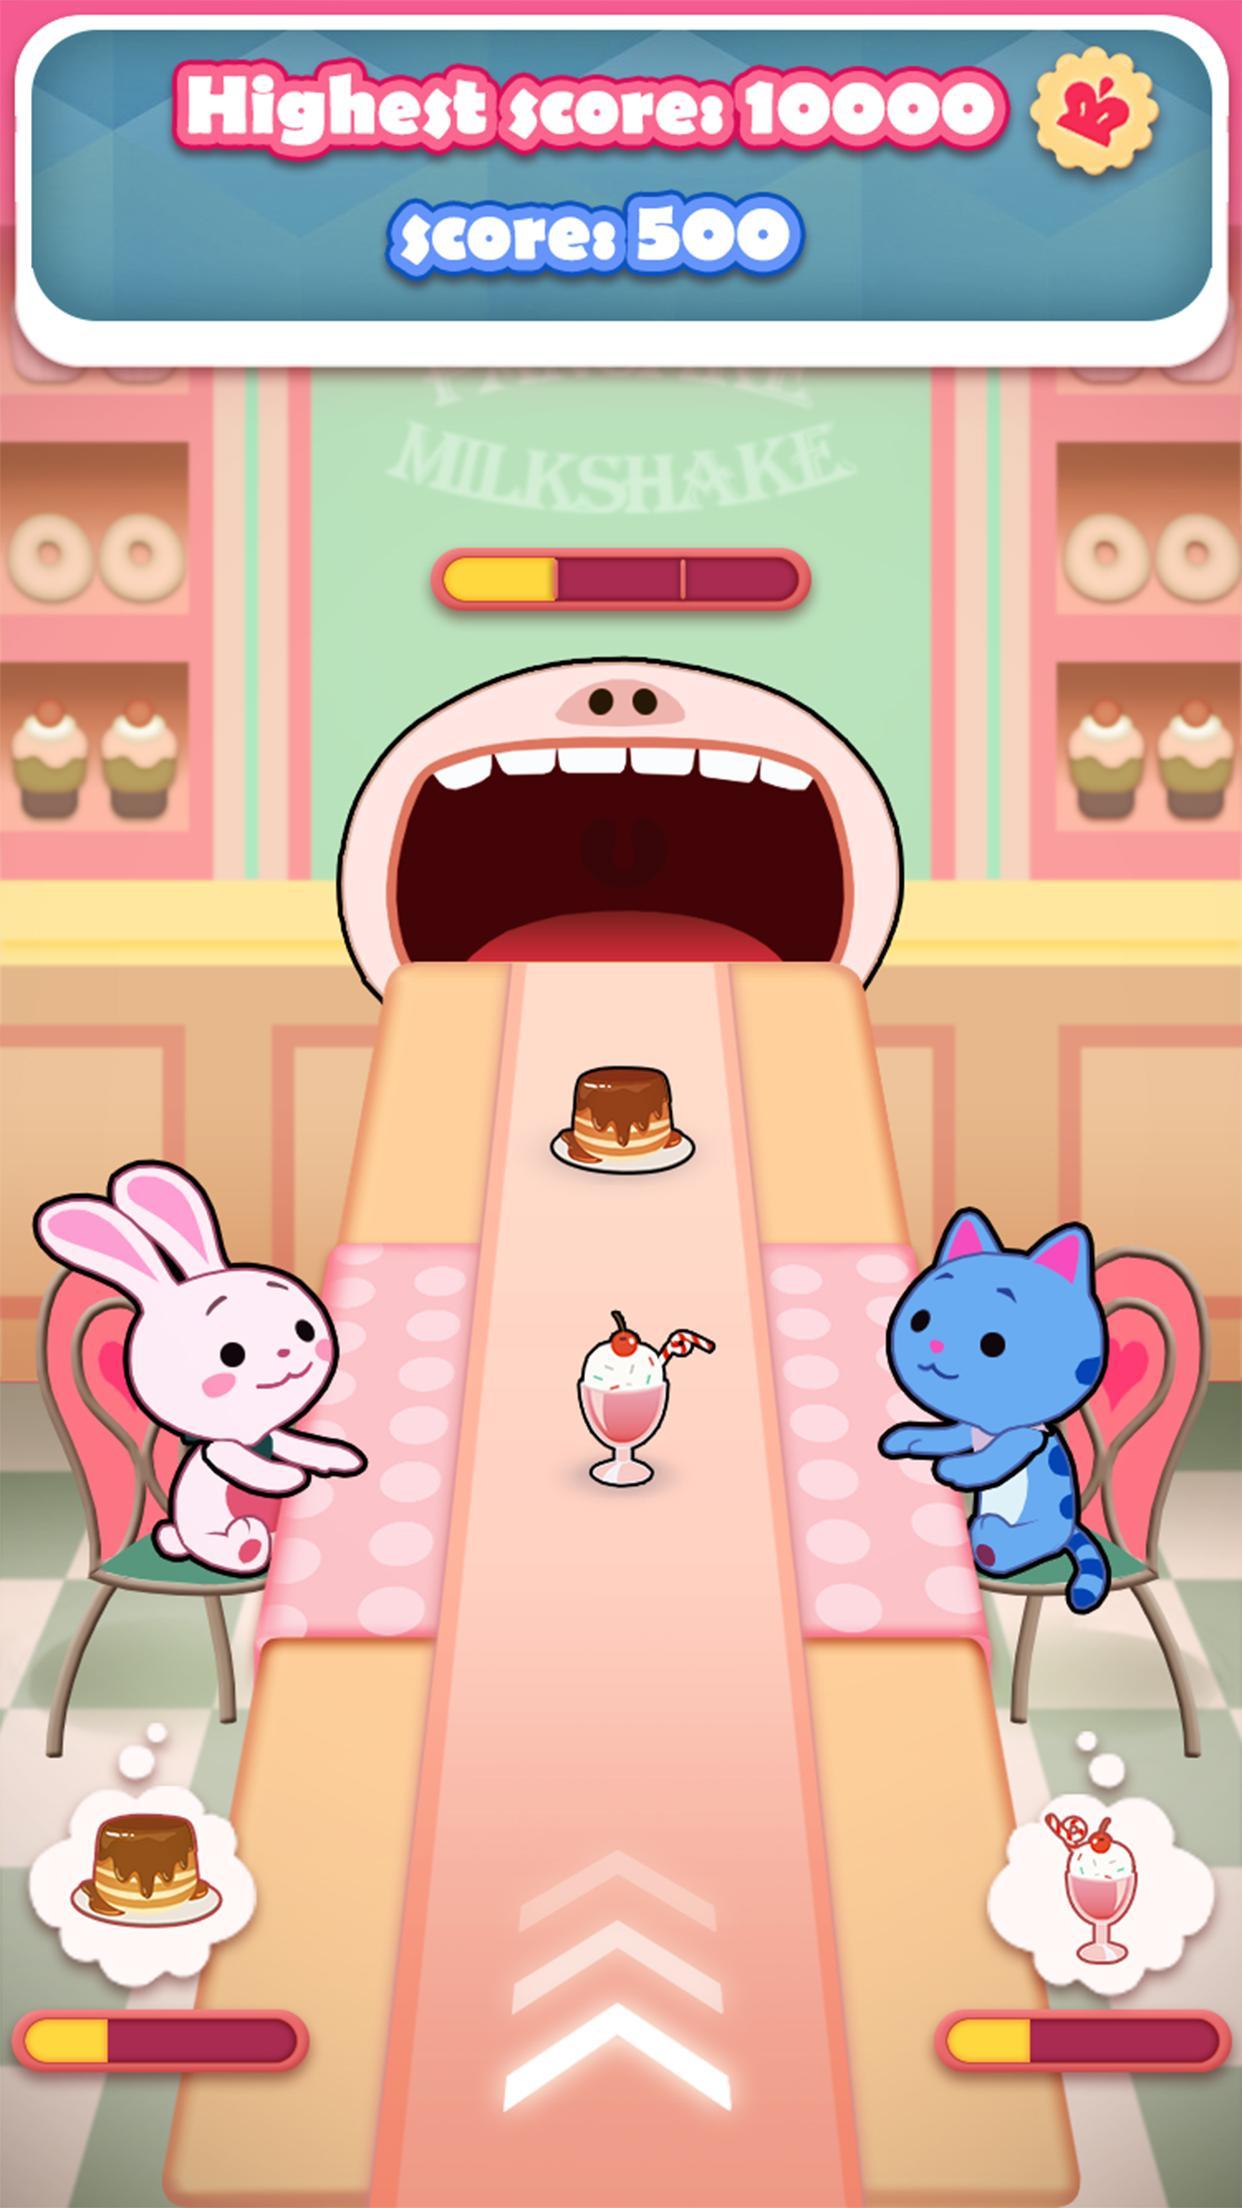 Screenshot of Pancake Milkshake™